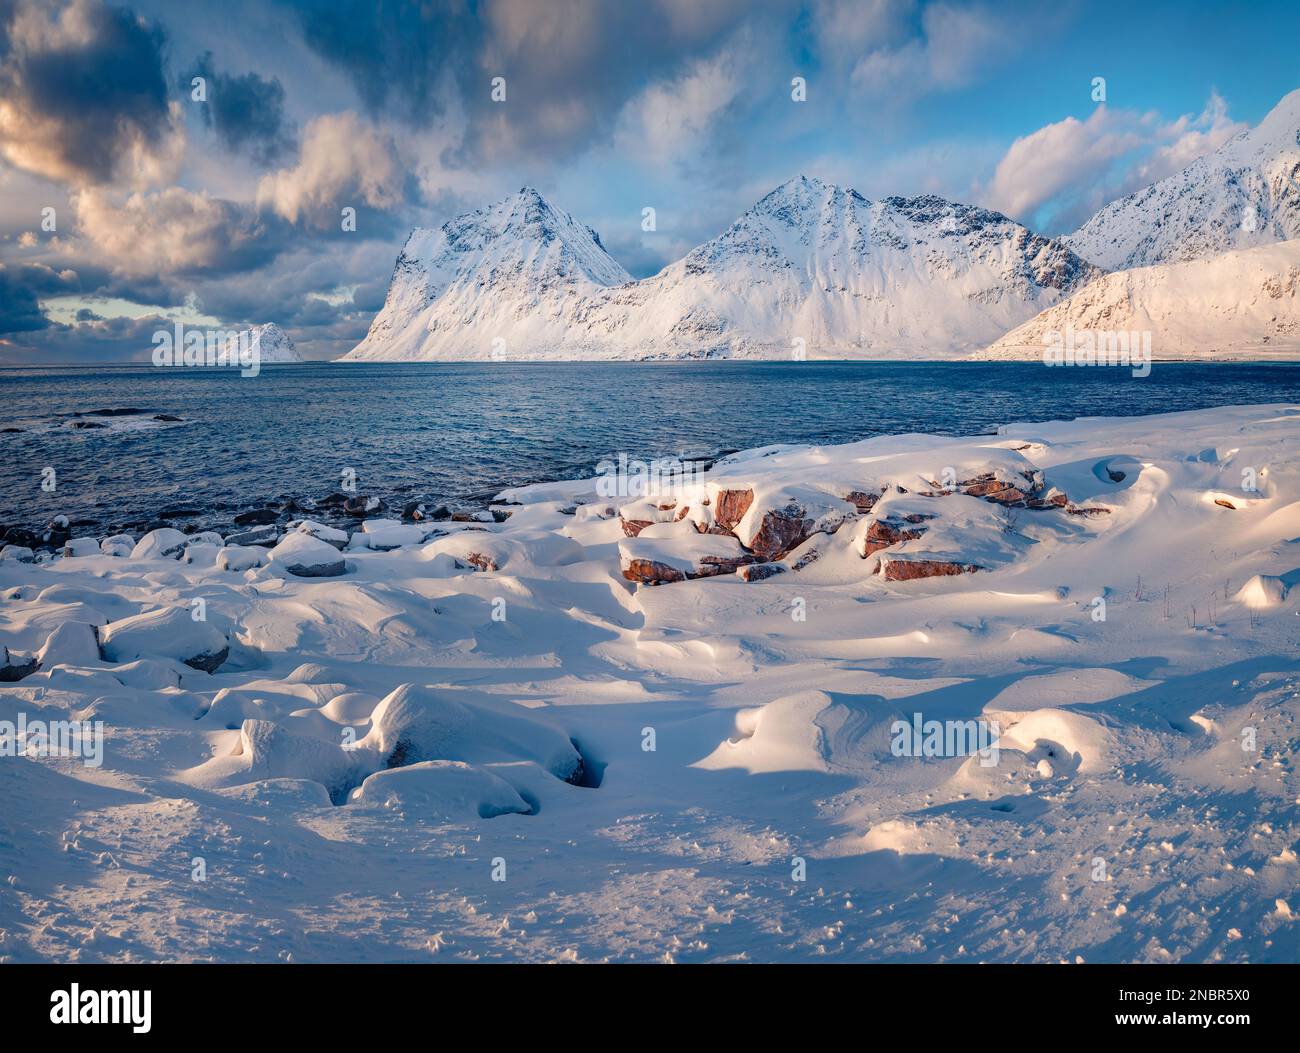 Kalter Wintertag auf den Lofoten-Inseln, Norwegen, Europa. Majestätische Outdoor-Szene von beliebtem Touristenziel - Skagsanden Beach, Flakstadoya Island. Beau Stockfoto